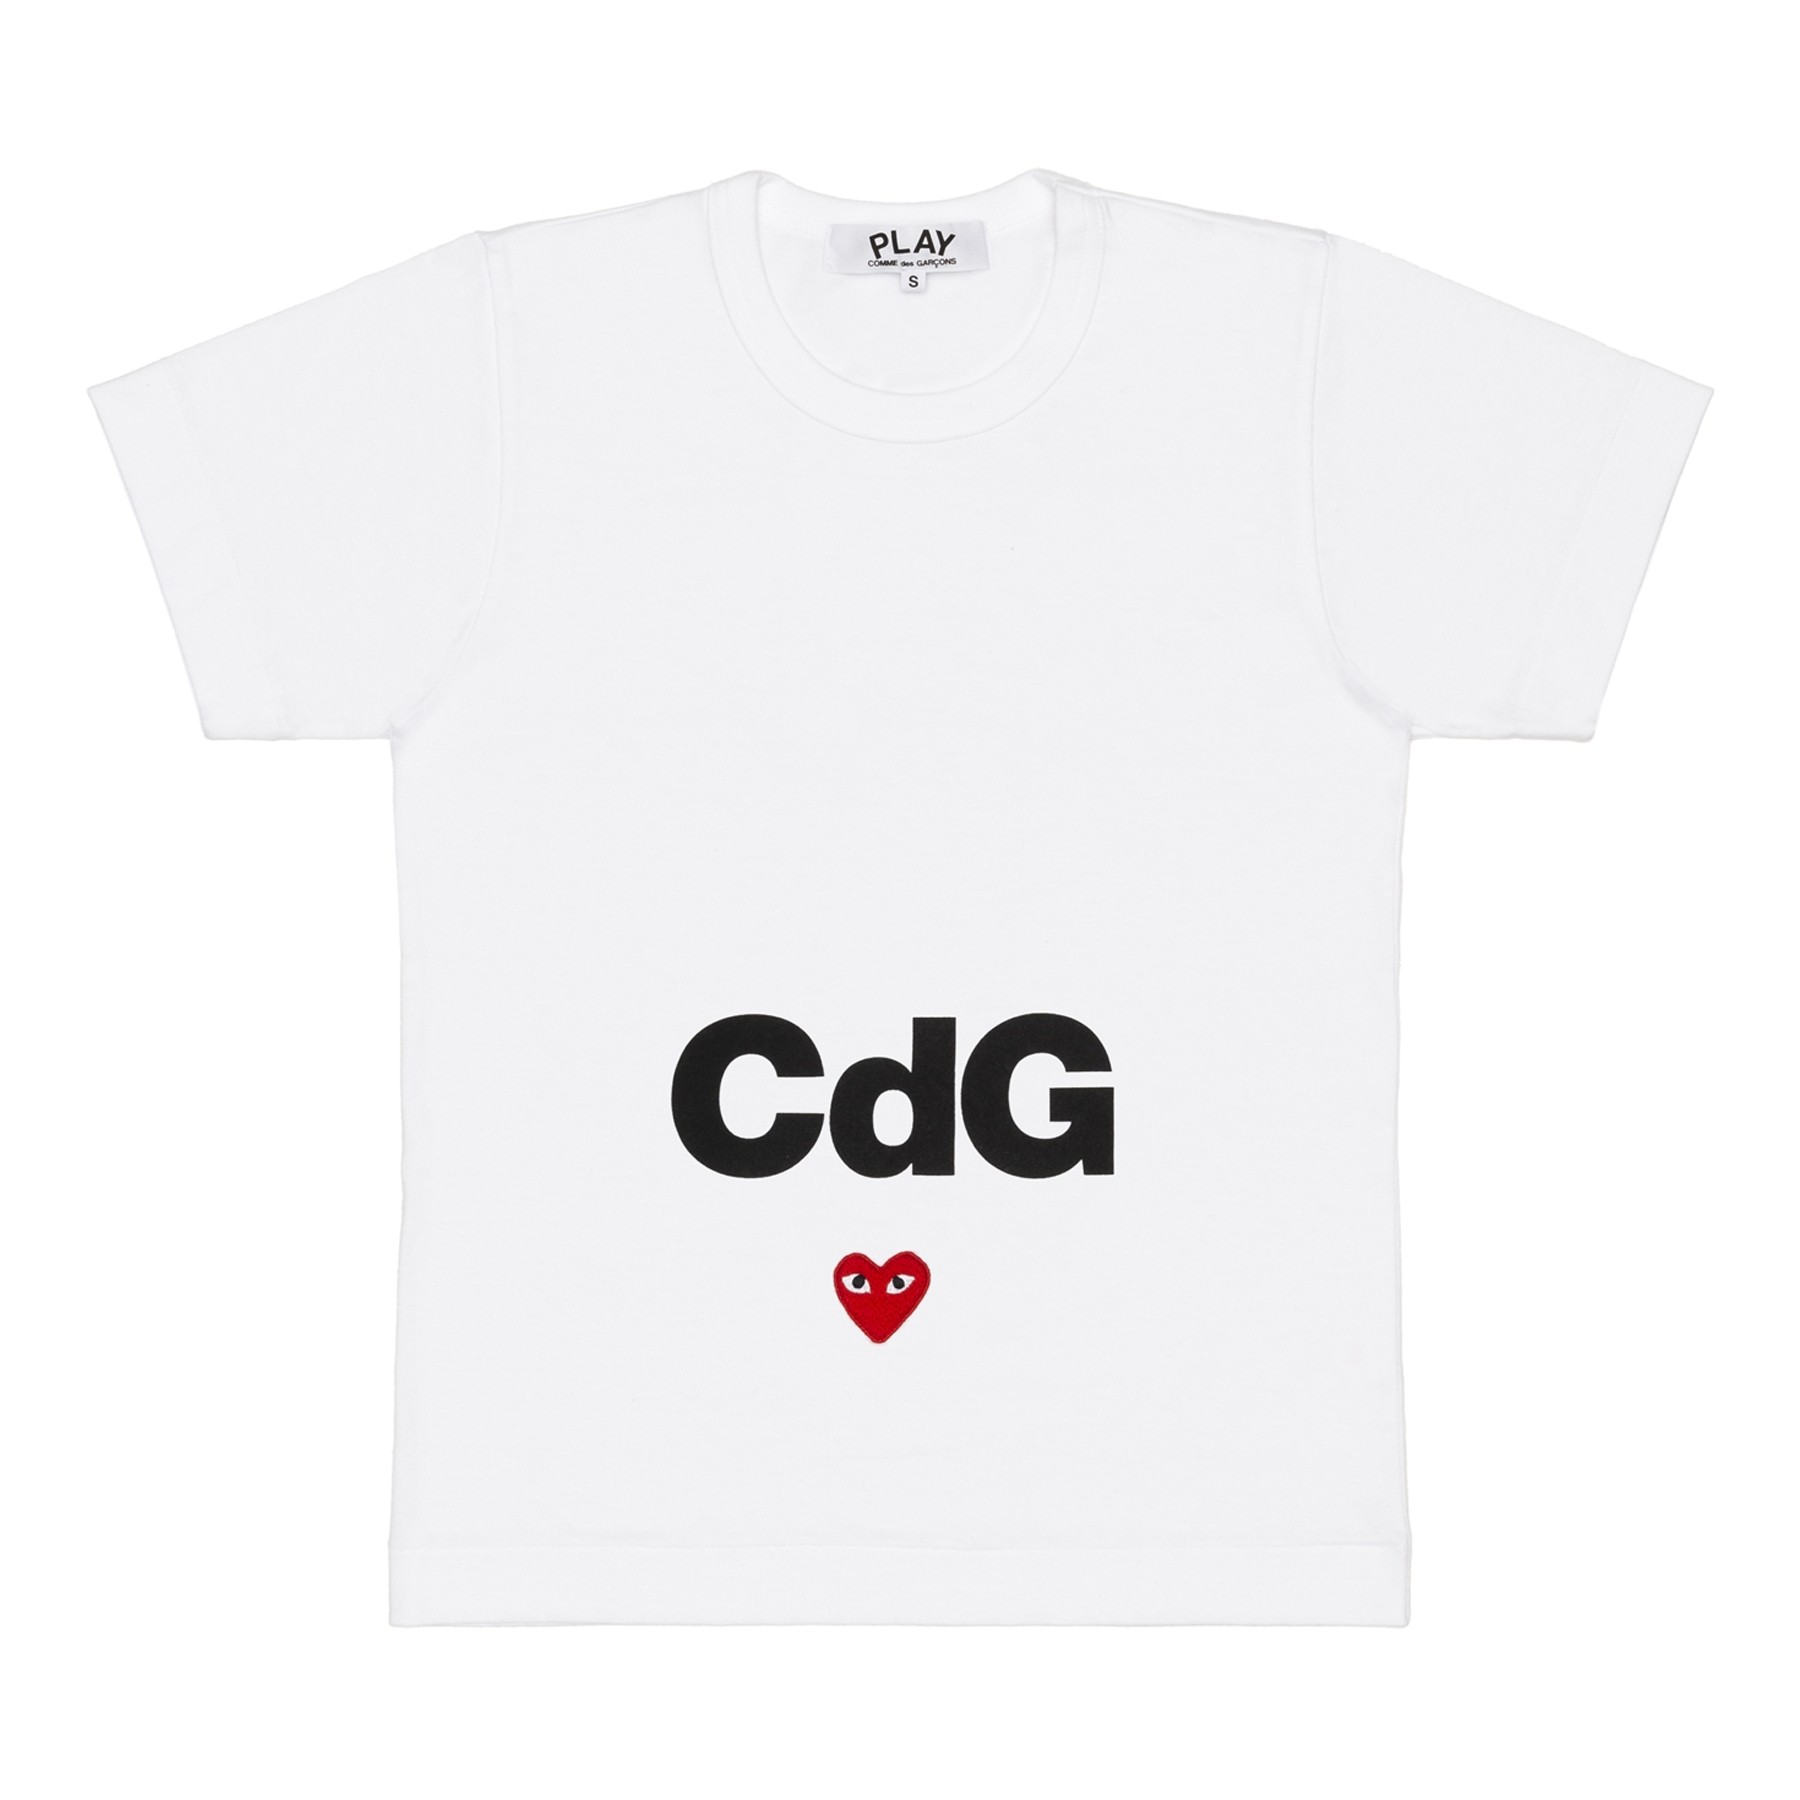 cdg play grey shirt